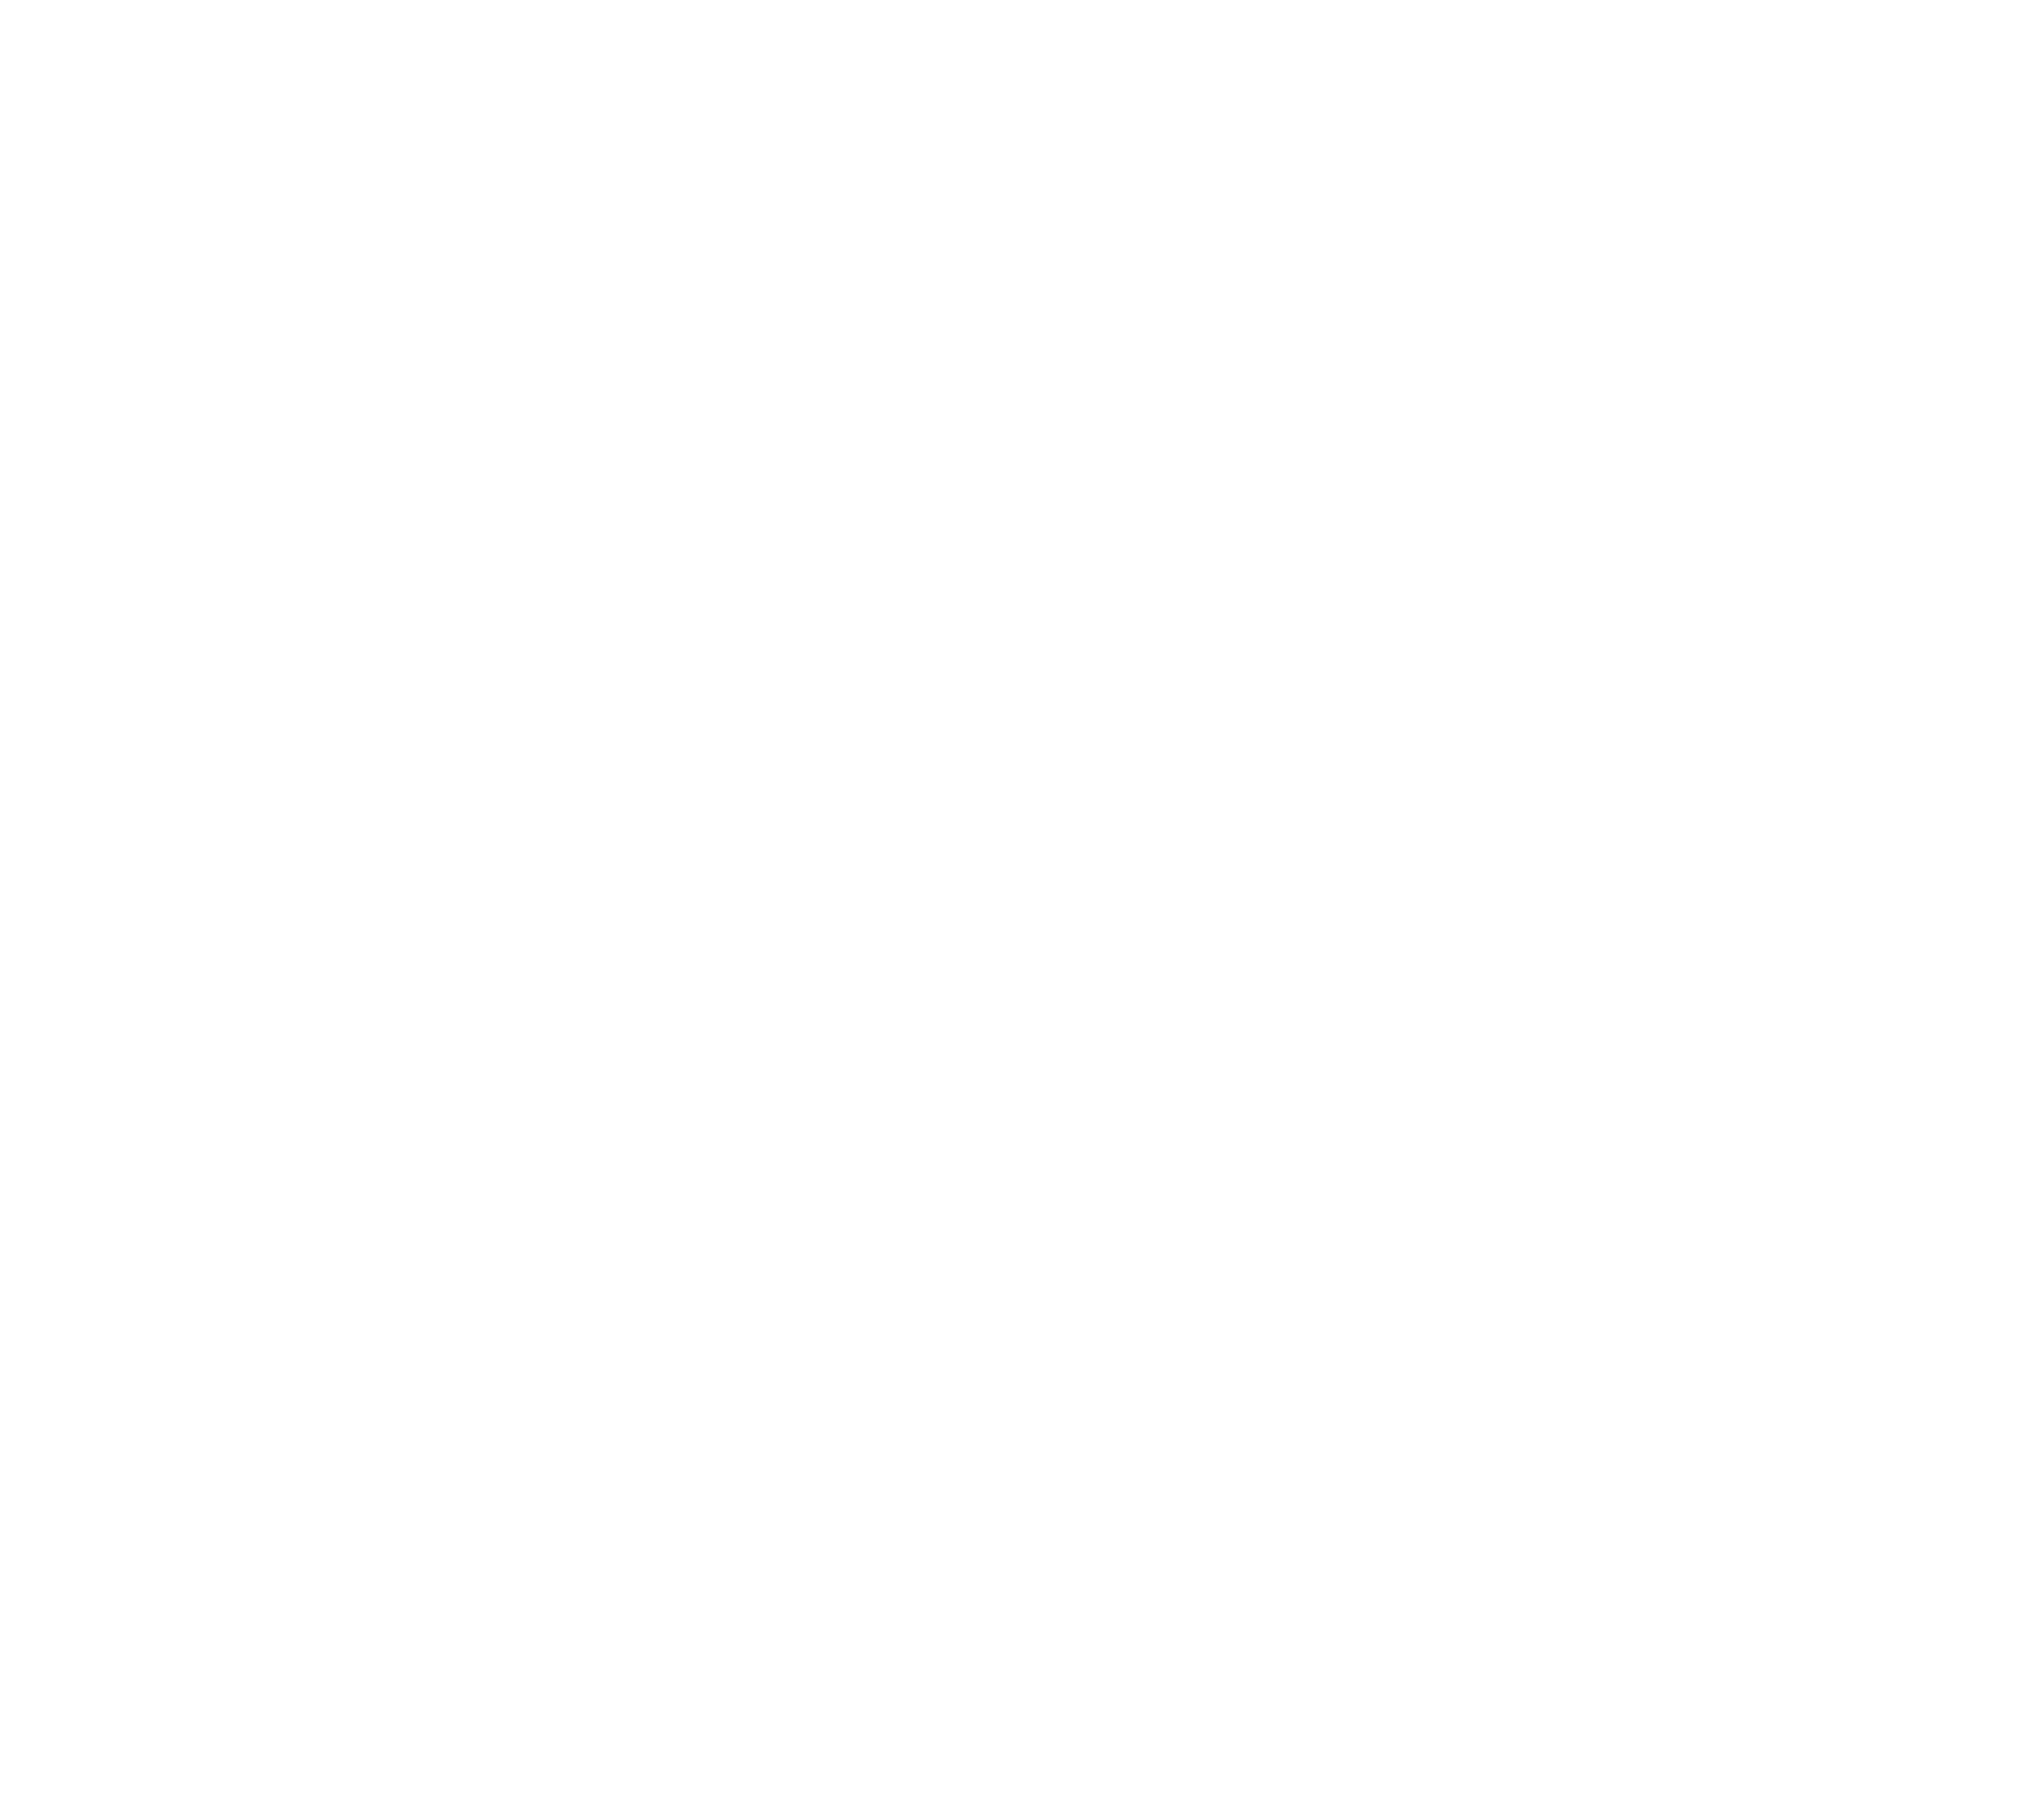 Other Ocean Interactive